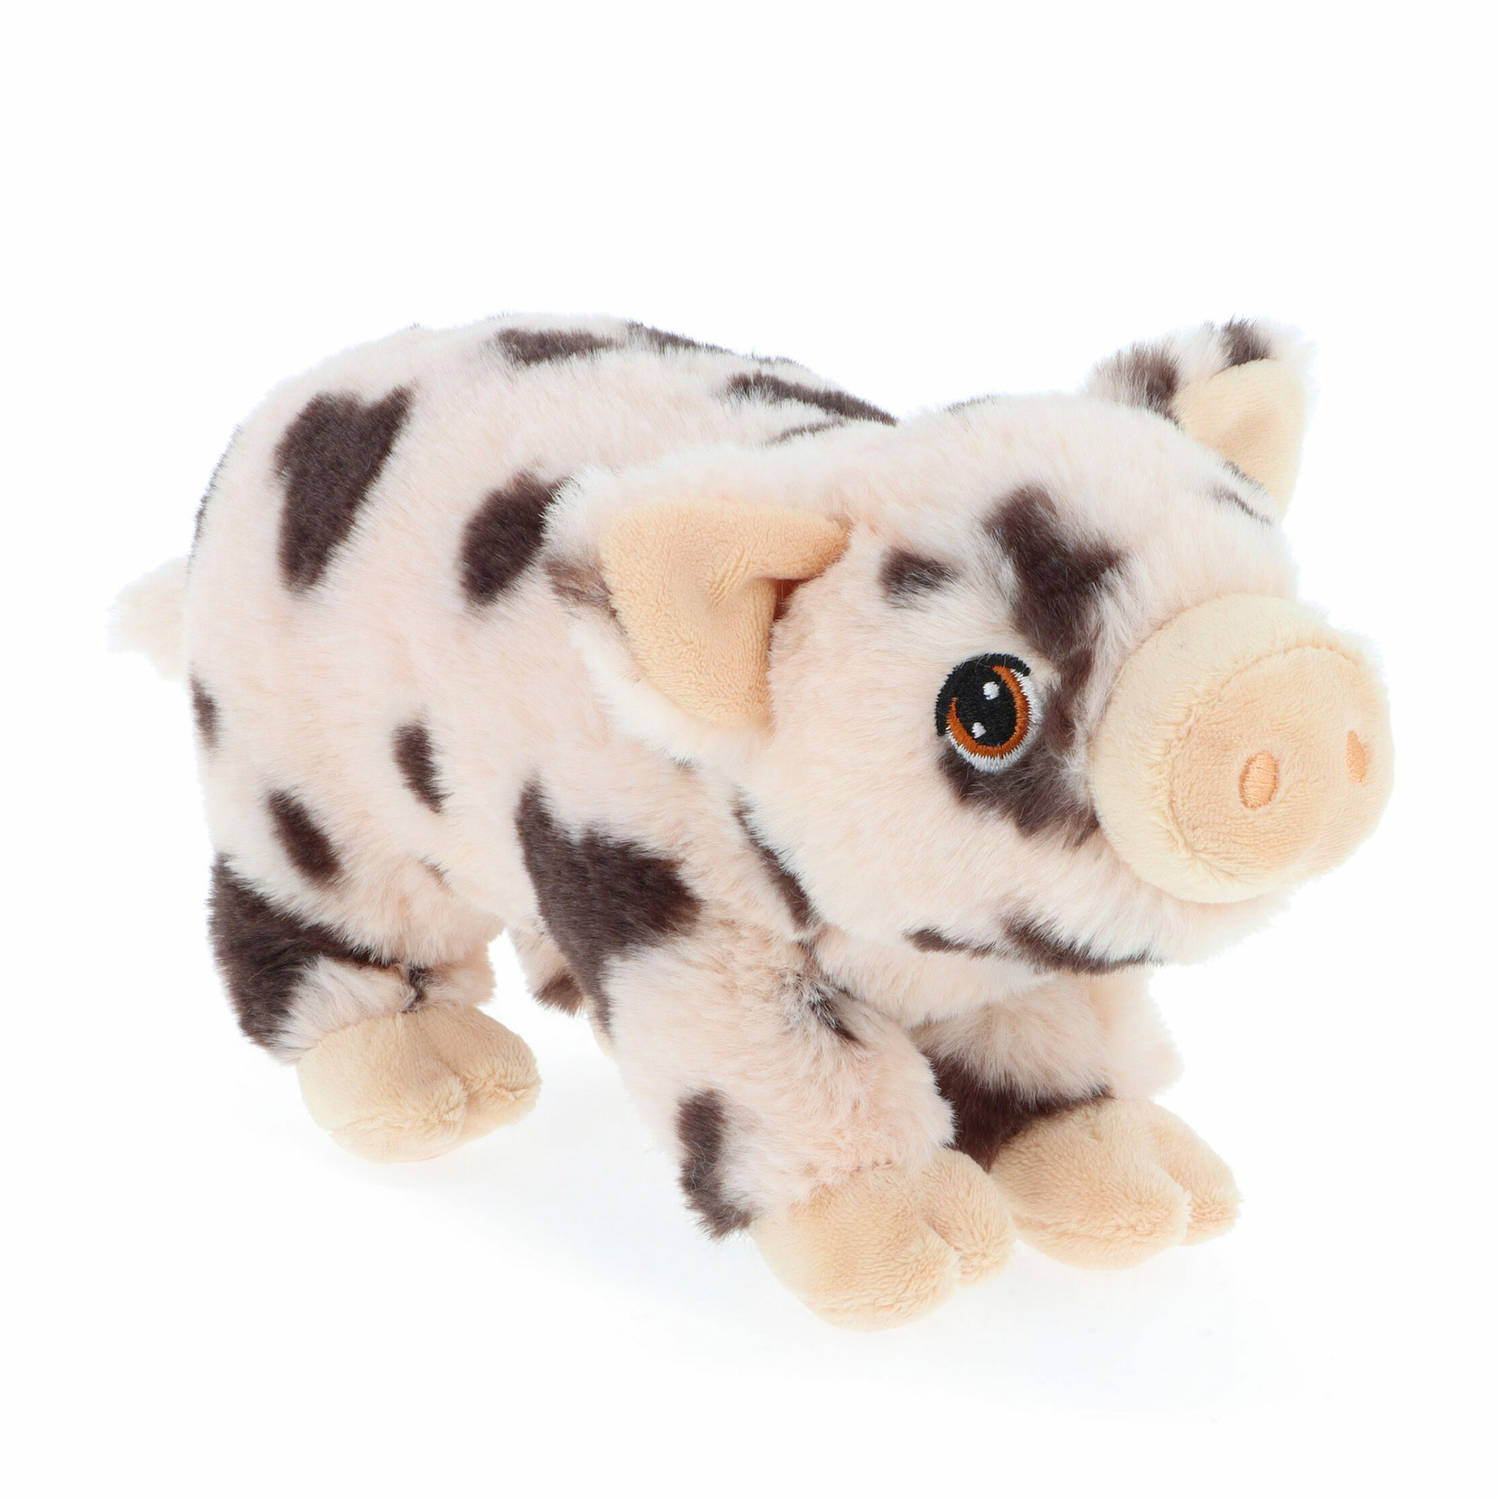 Keel Toys pluche varken/biggetje knuffeldier - roze gevlekt - lopend - 18 cm - Luxe Eco kwaliteit knuffels